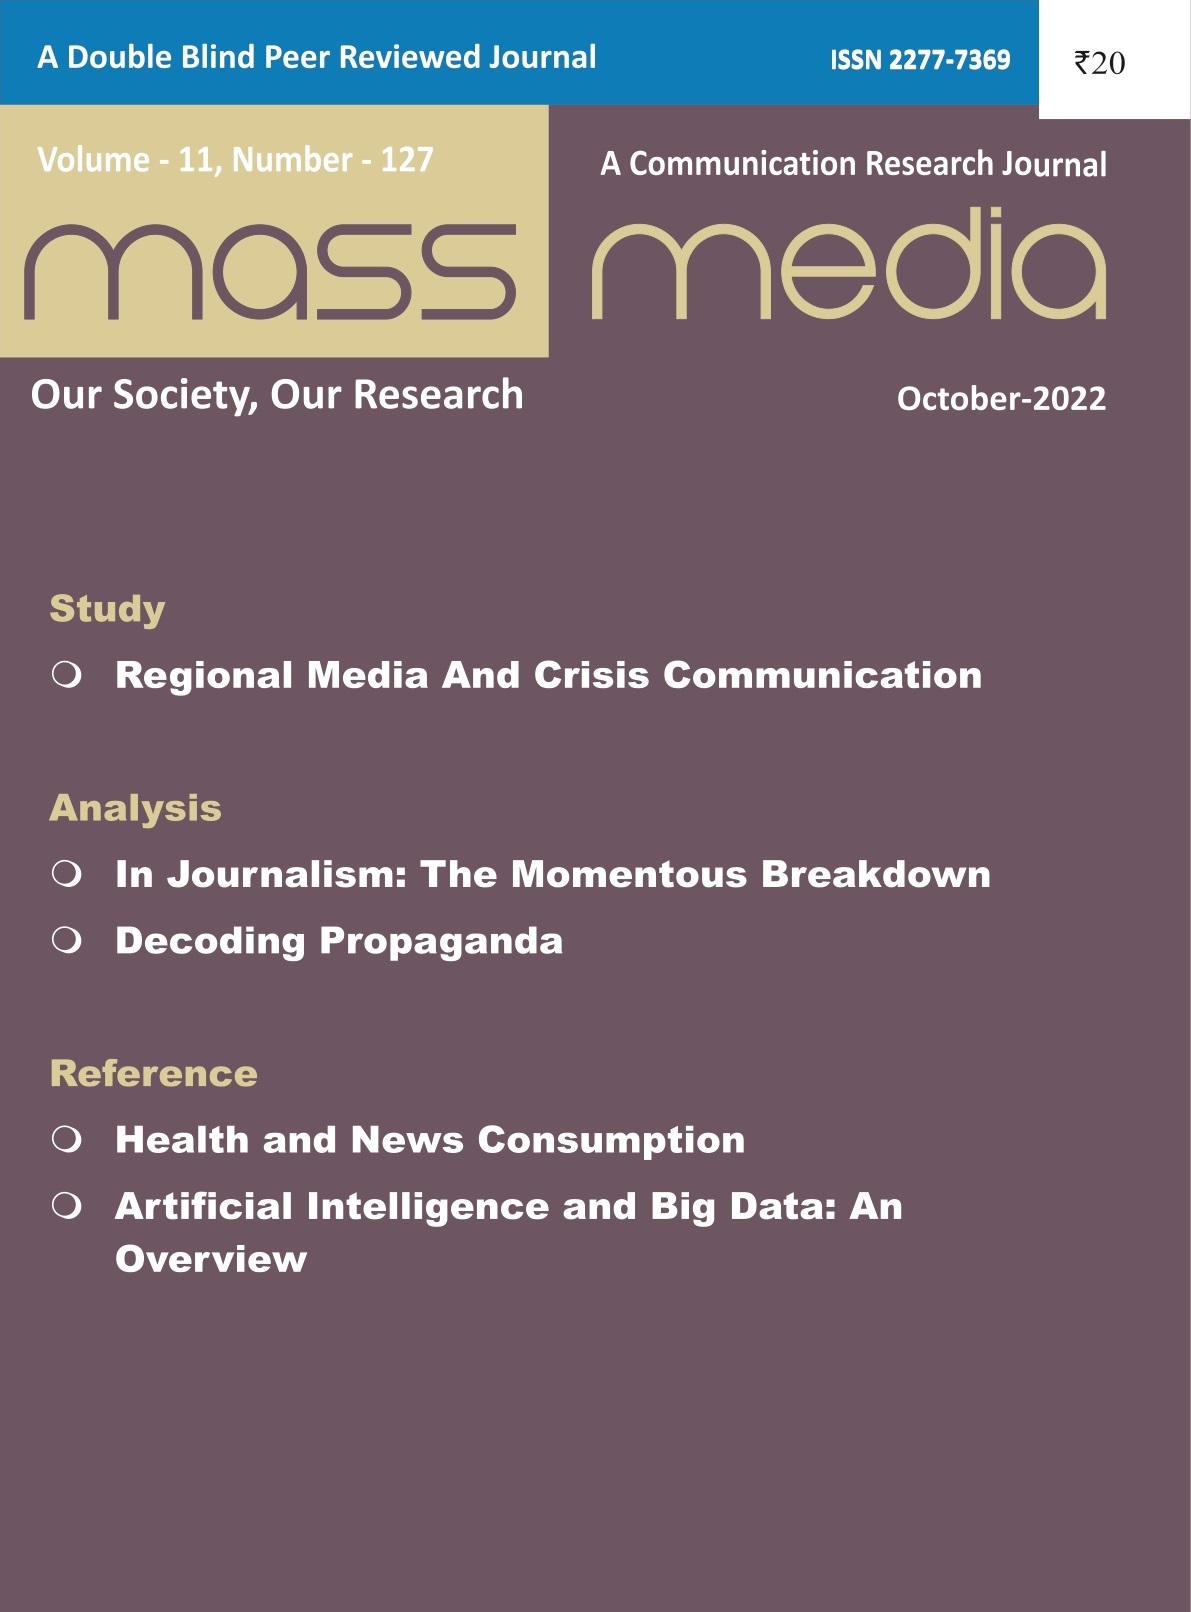 Mass Media (Oct. 2022)